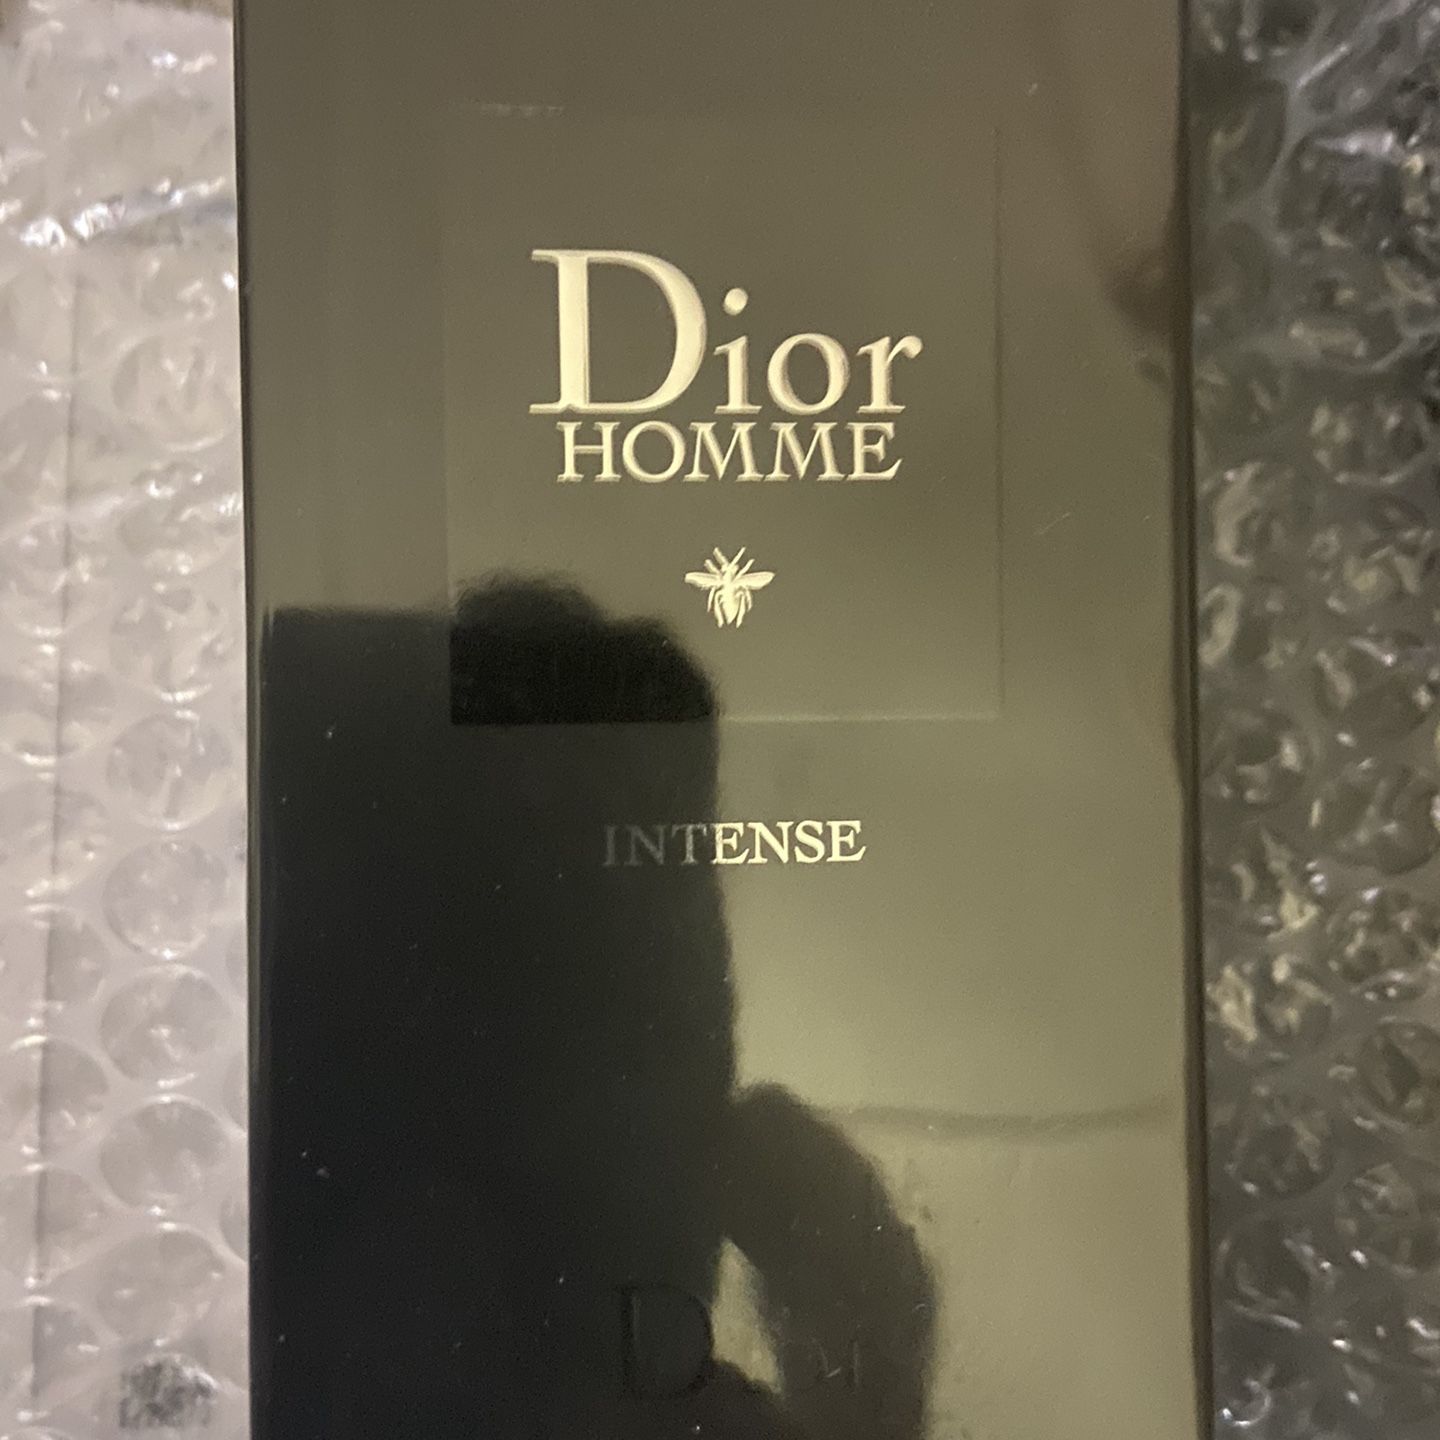 Dior Homme 2020 3.4 Fl Oz Brand New! Batch 0C01